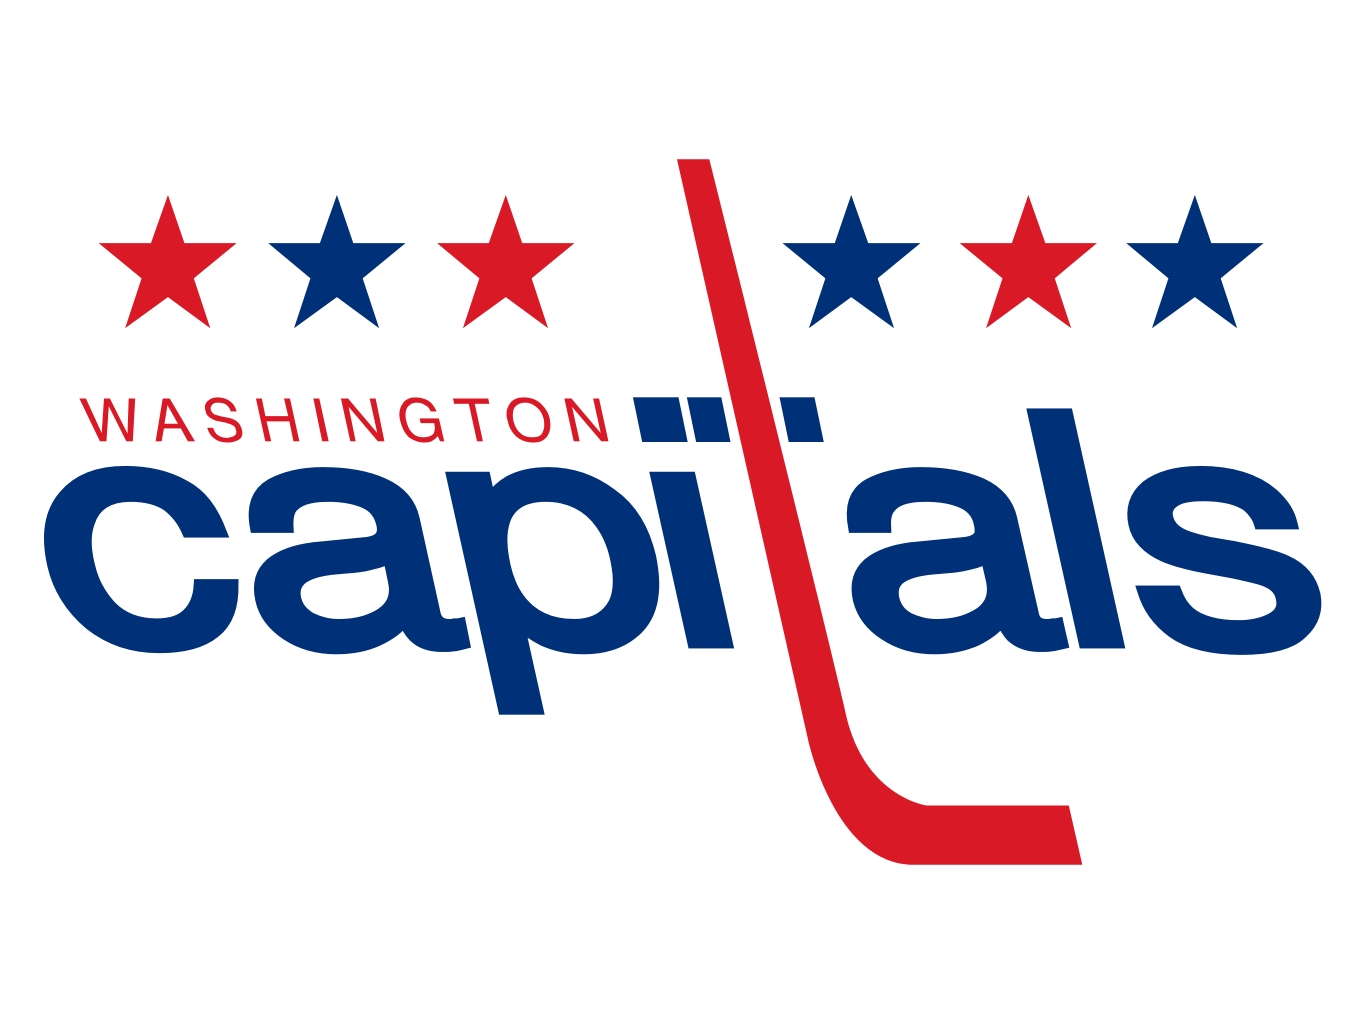 Washington Capitals NHL Hockey Logos